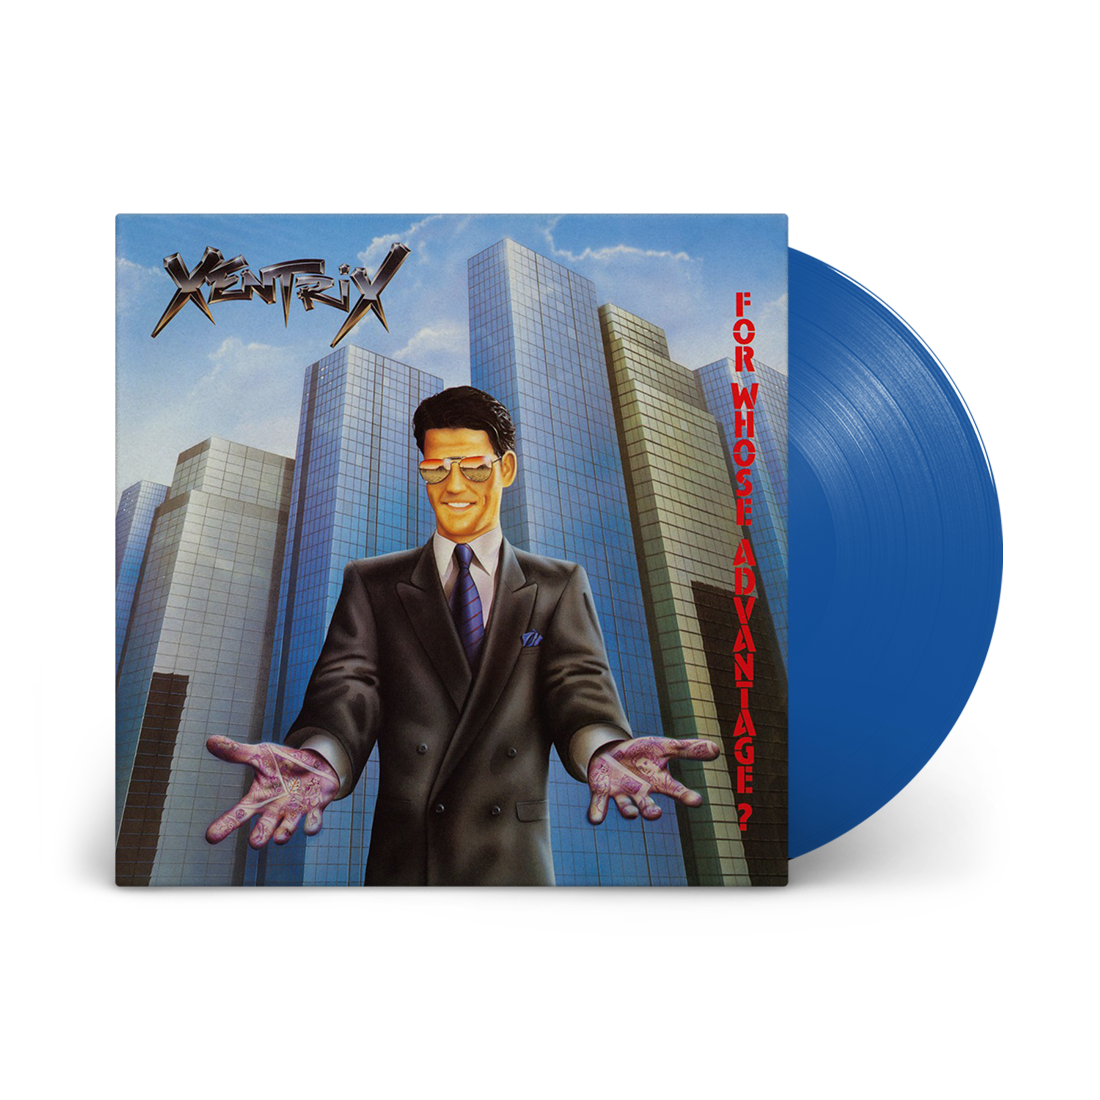 For Whose Advantage?: Limited Edition Translucent Blue Vinyl LP